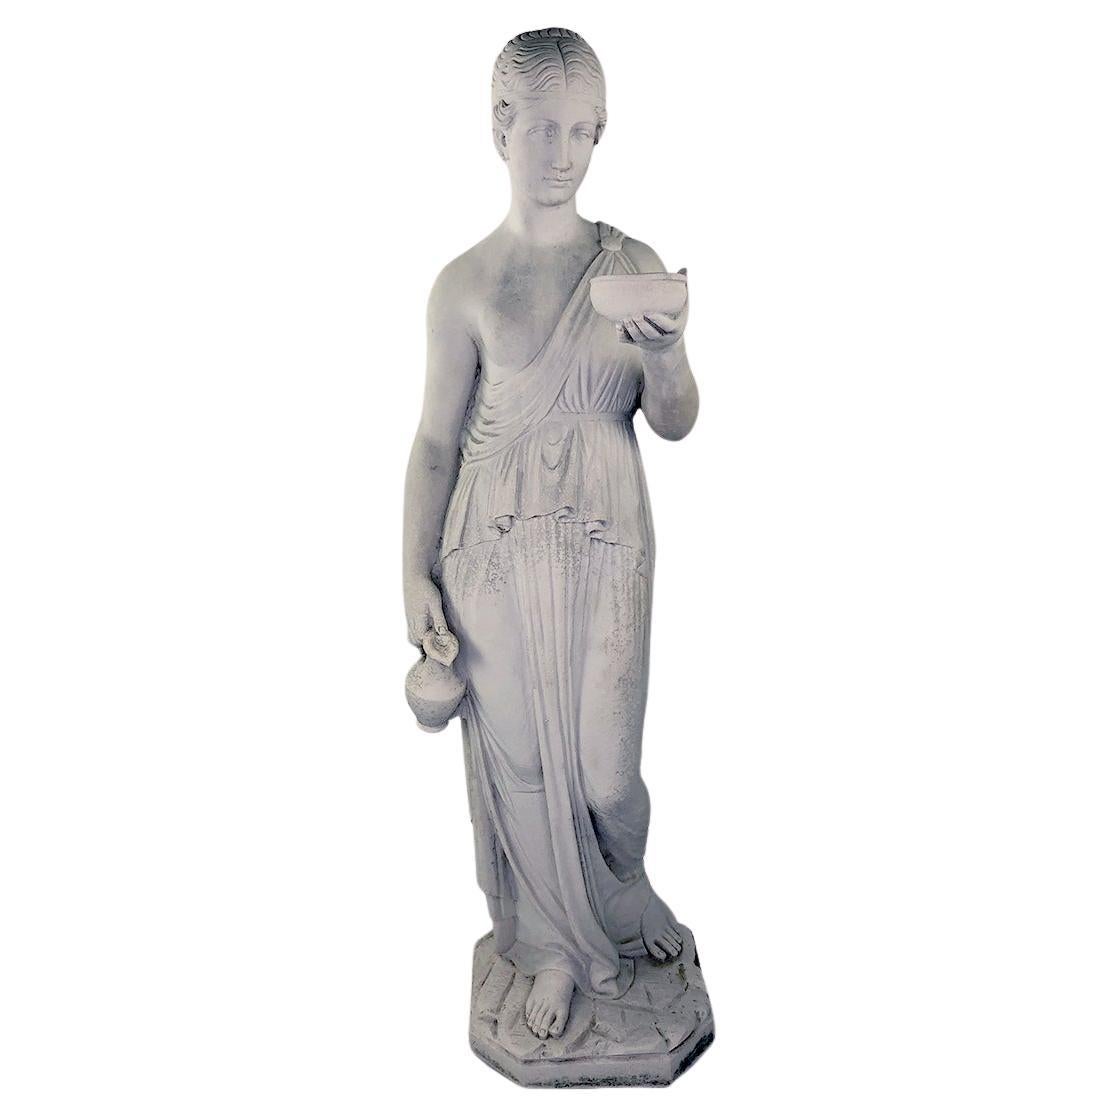 Reproduction vintage d'une statue antique de style Greco-Romain